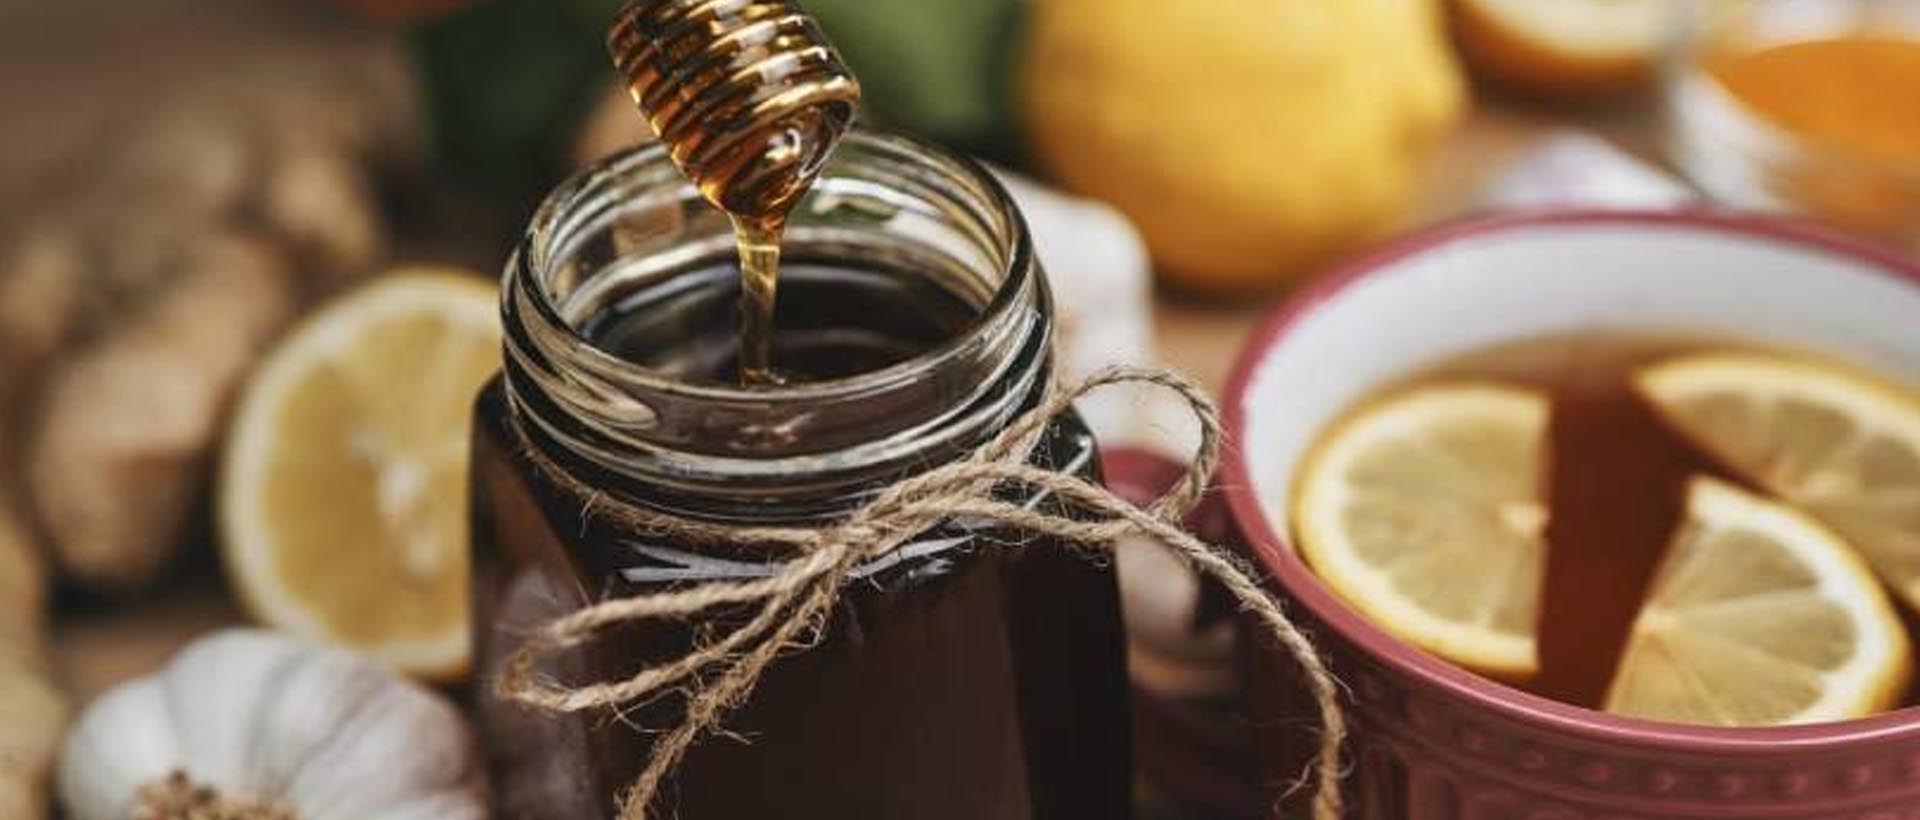 La miel, el ingrediente secreto